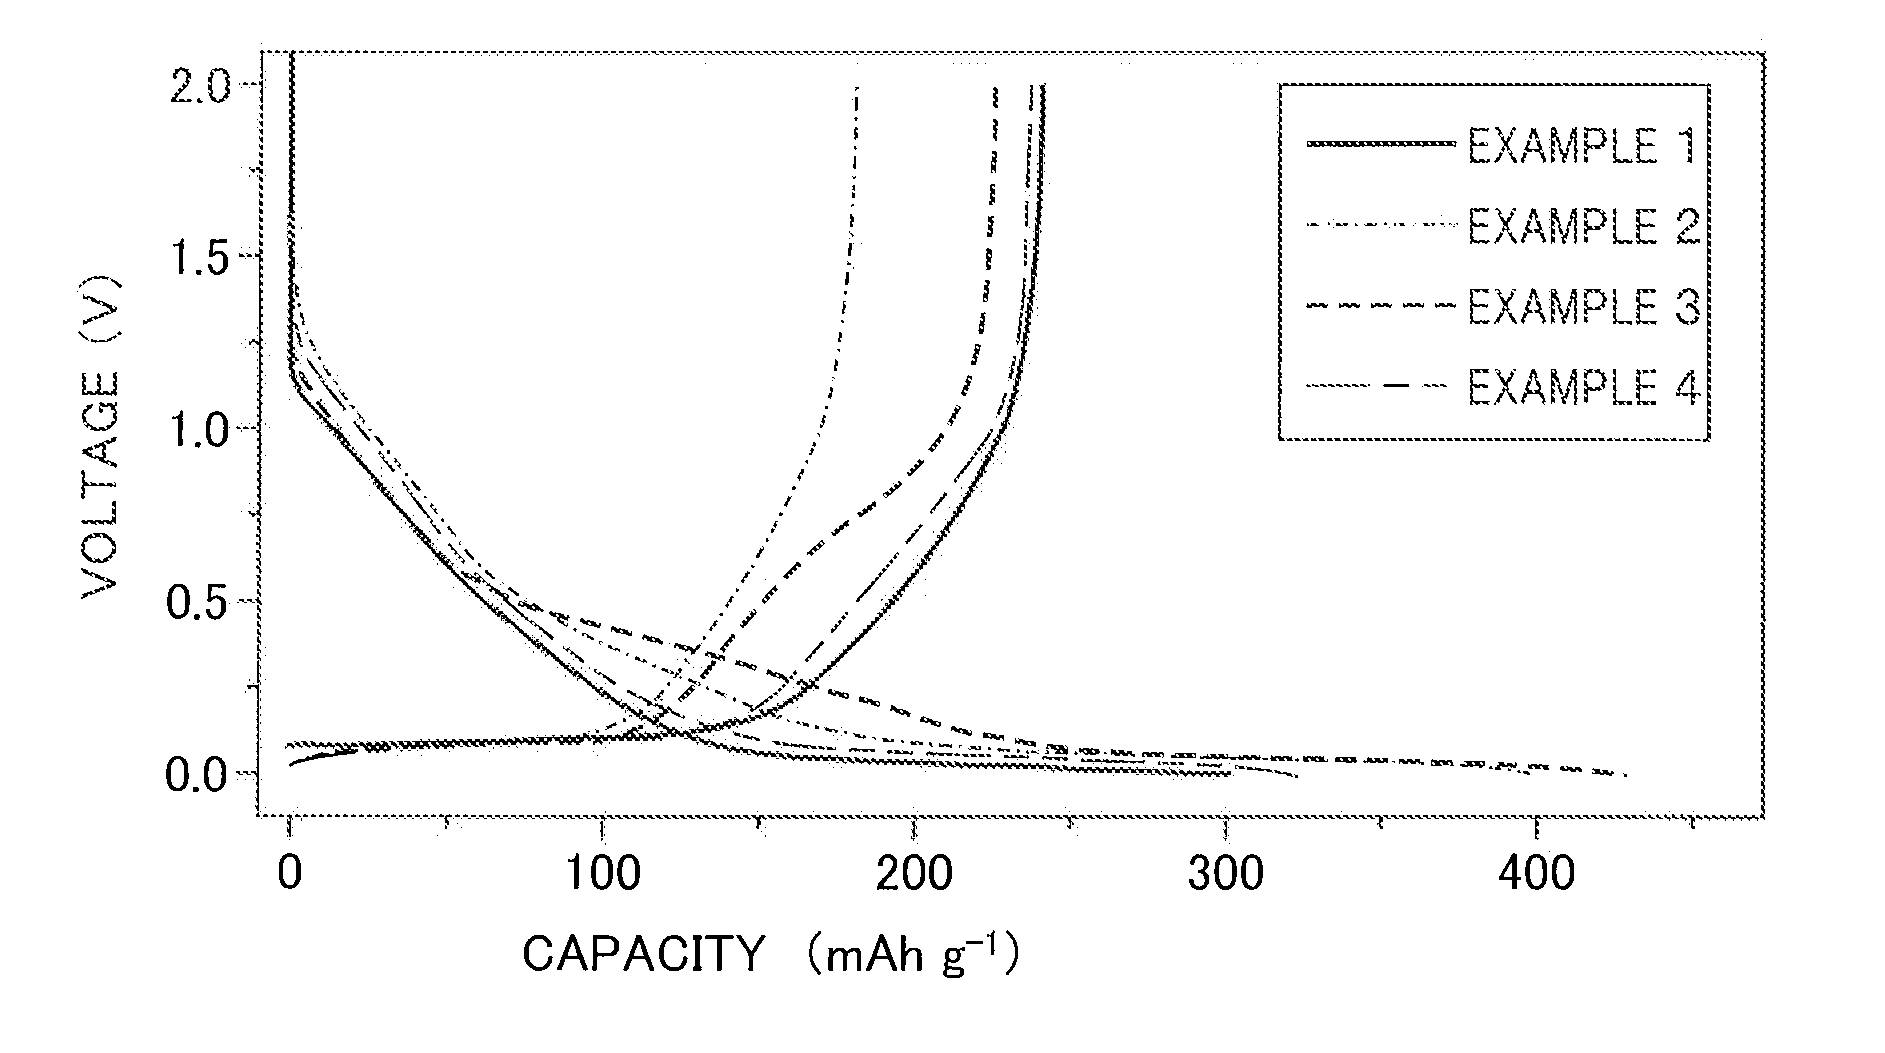 Sodium ion secondary battery